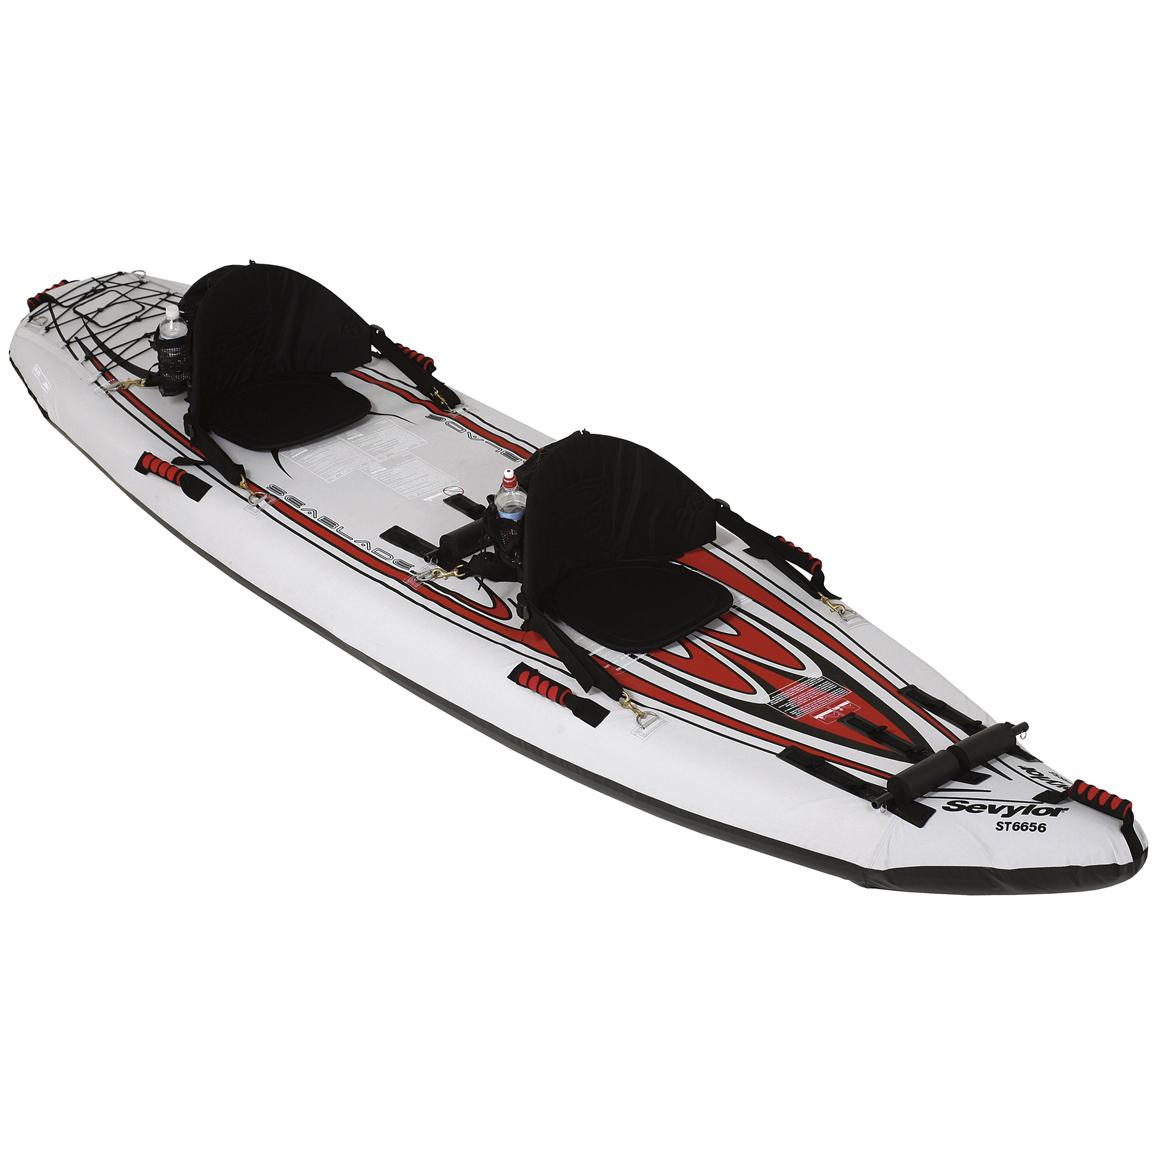 SevylorÂ® 2 - Person Sit - On - Top Kayak, White - 127369 